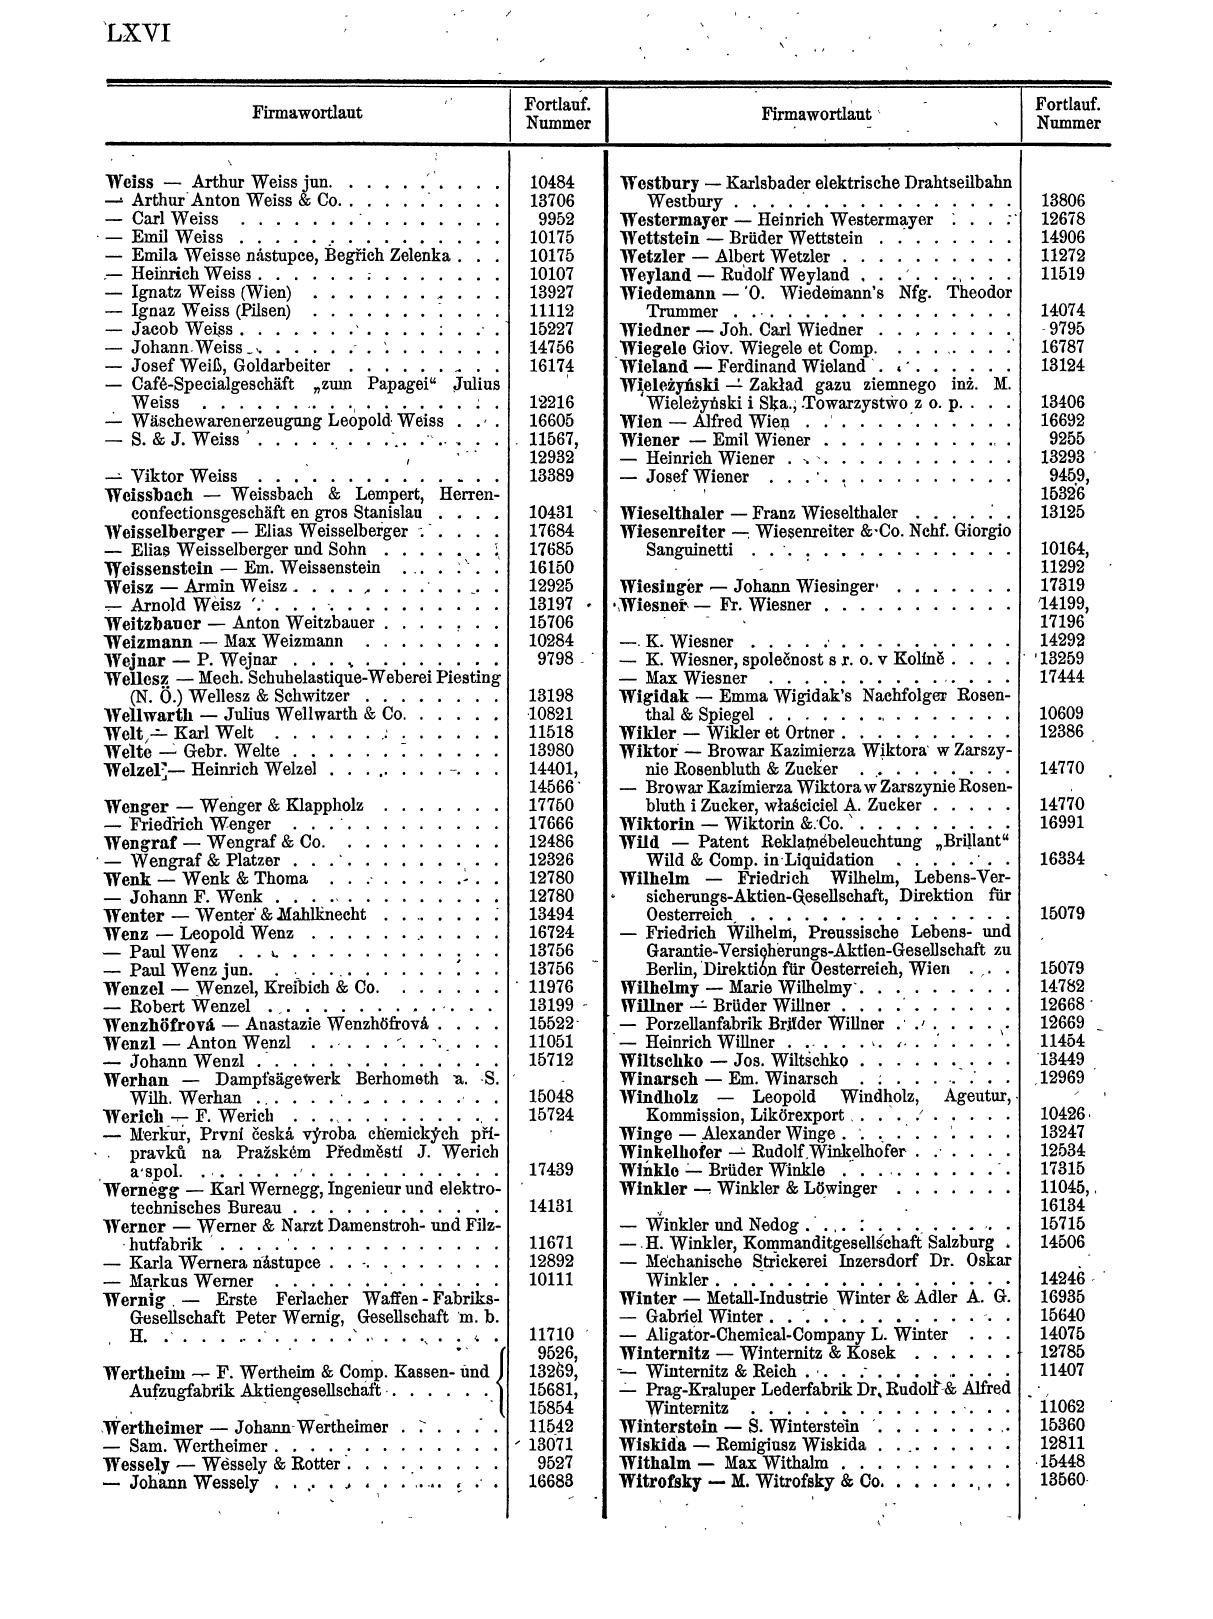 Zentralblatt für die Eintragungen in das Handelsregister 1913, Teil 2 - Seite 70